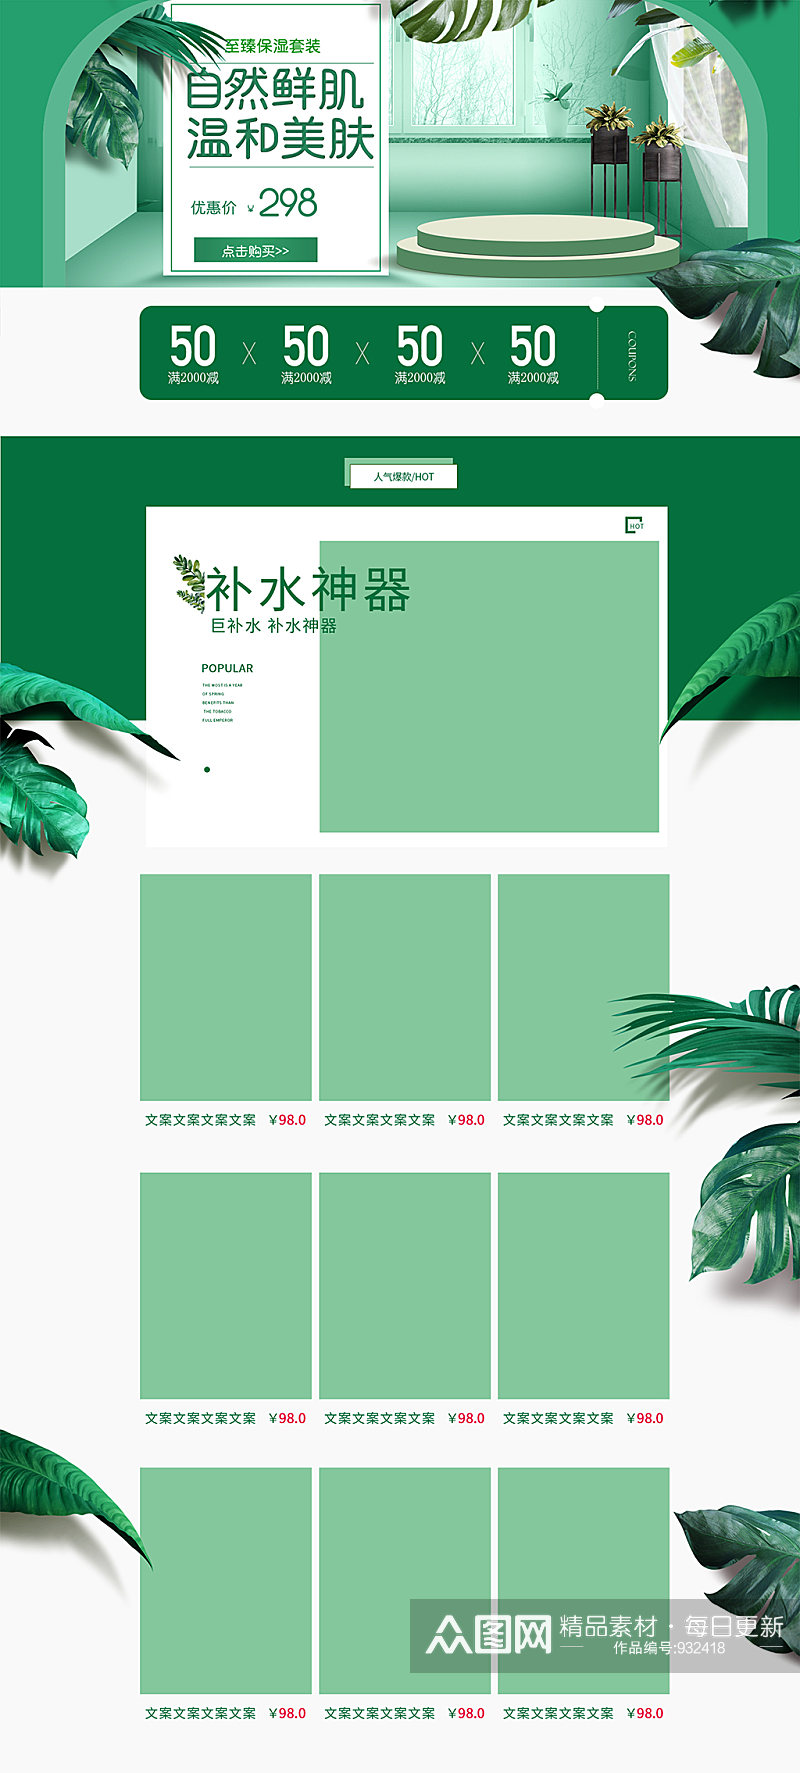 绿色小清新化妆品活动页面设计素材